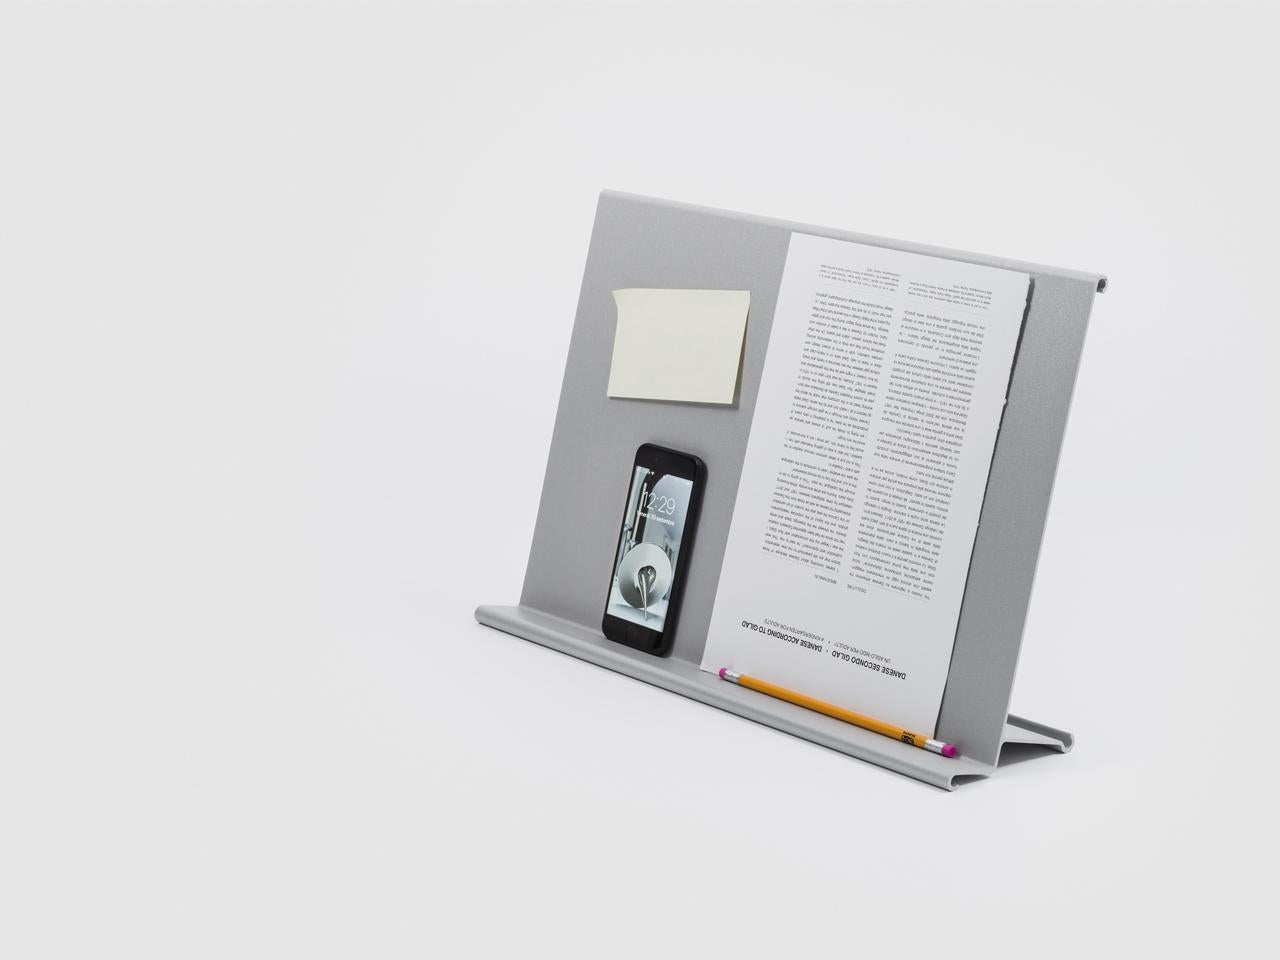 Archivio vivo ist ein Buchständer, der in zwei Versionen erhältlich ist. Die erste Version ist freistehend und kann auf einen Tisch oder Schreibtisch gestellt werden, während die zweite Version an der Wand befestigt werden kann. Das Stück ist leicht